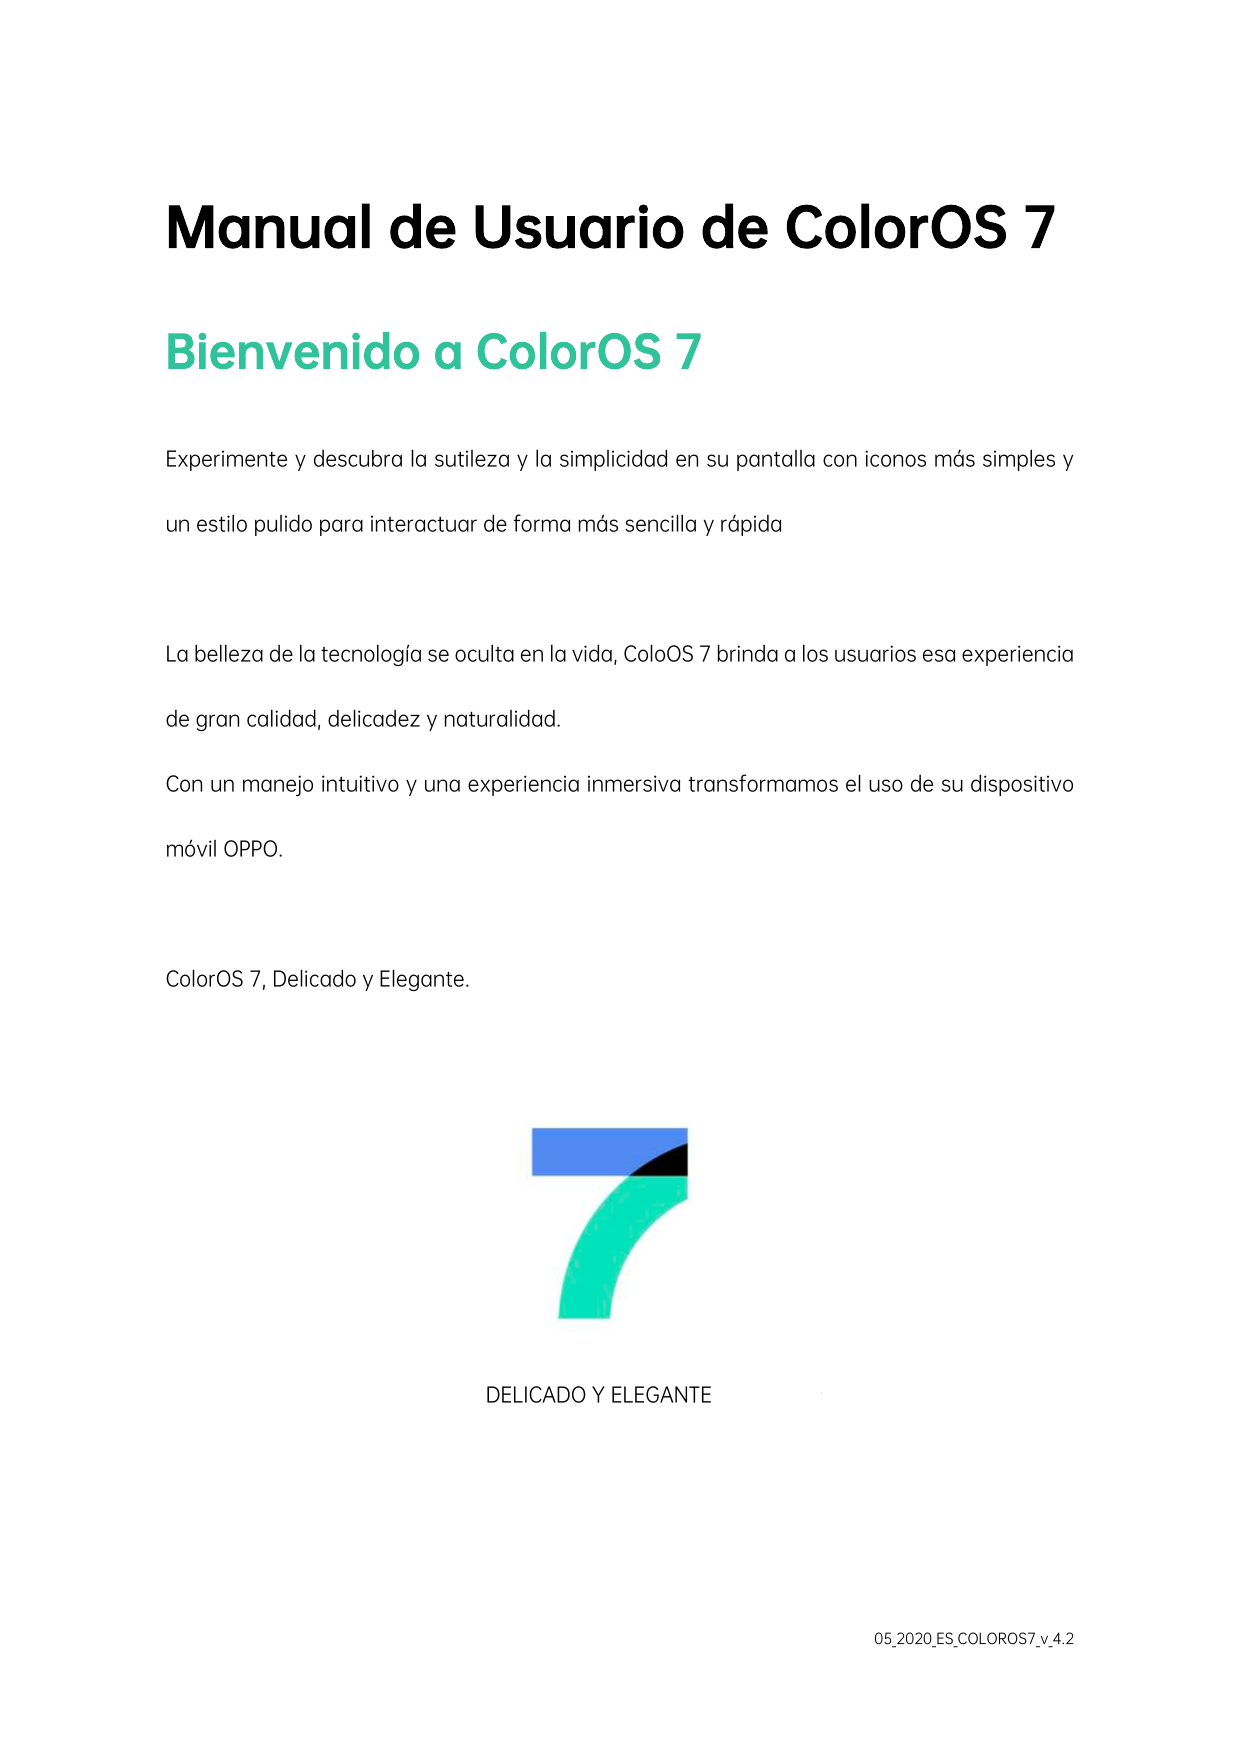 Manual de Usuario de ColorOS 7Bienvenido a ColorOS 7Experimente y descubra la sutileza y la simplicidad en su pantalla con icono